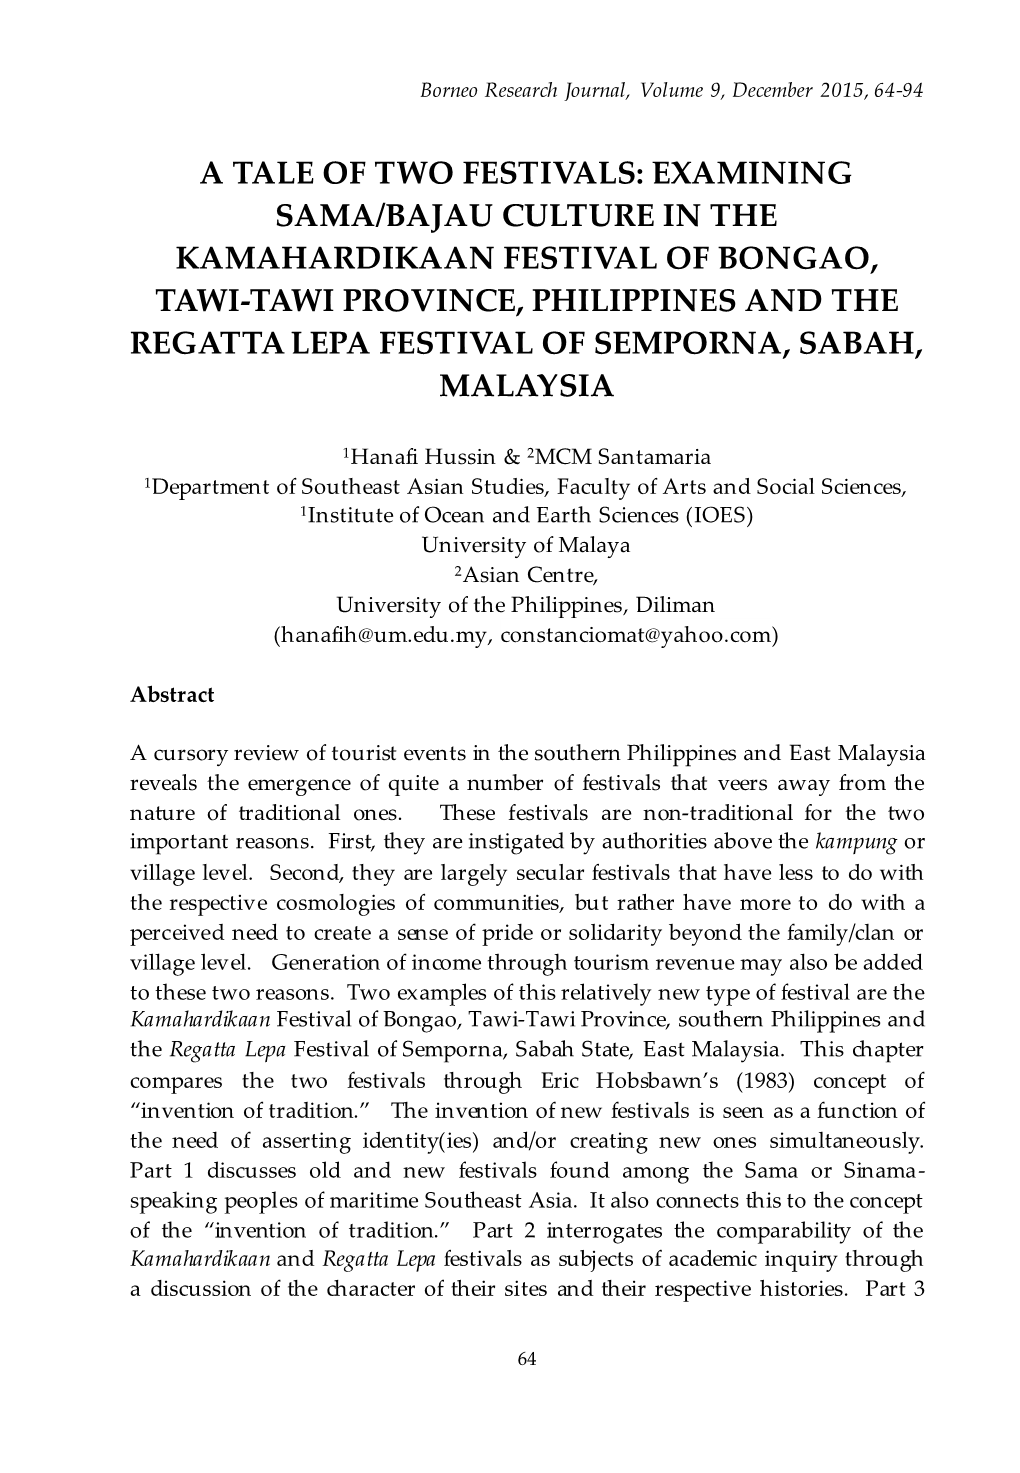 Examining Sama-Bajau Culture in the Kamahardikaan